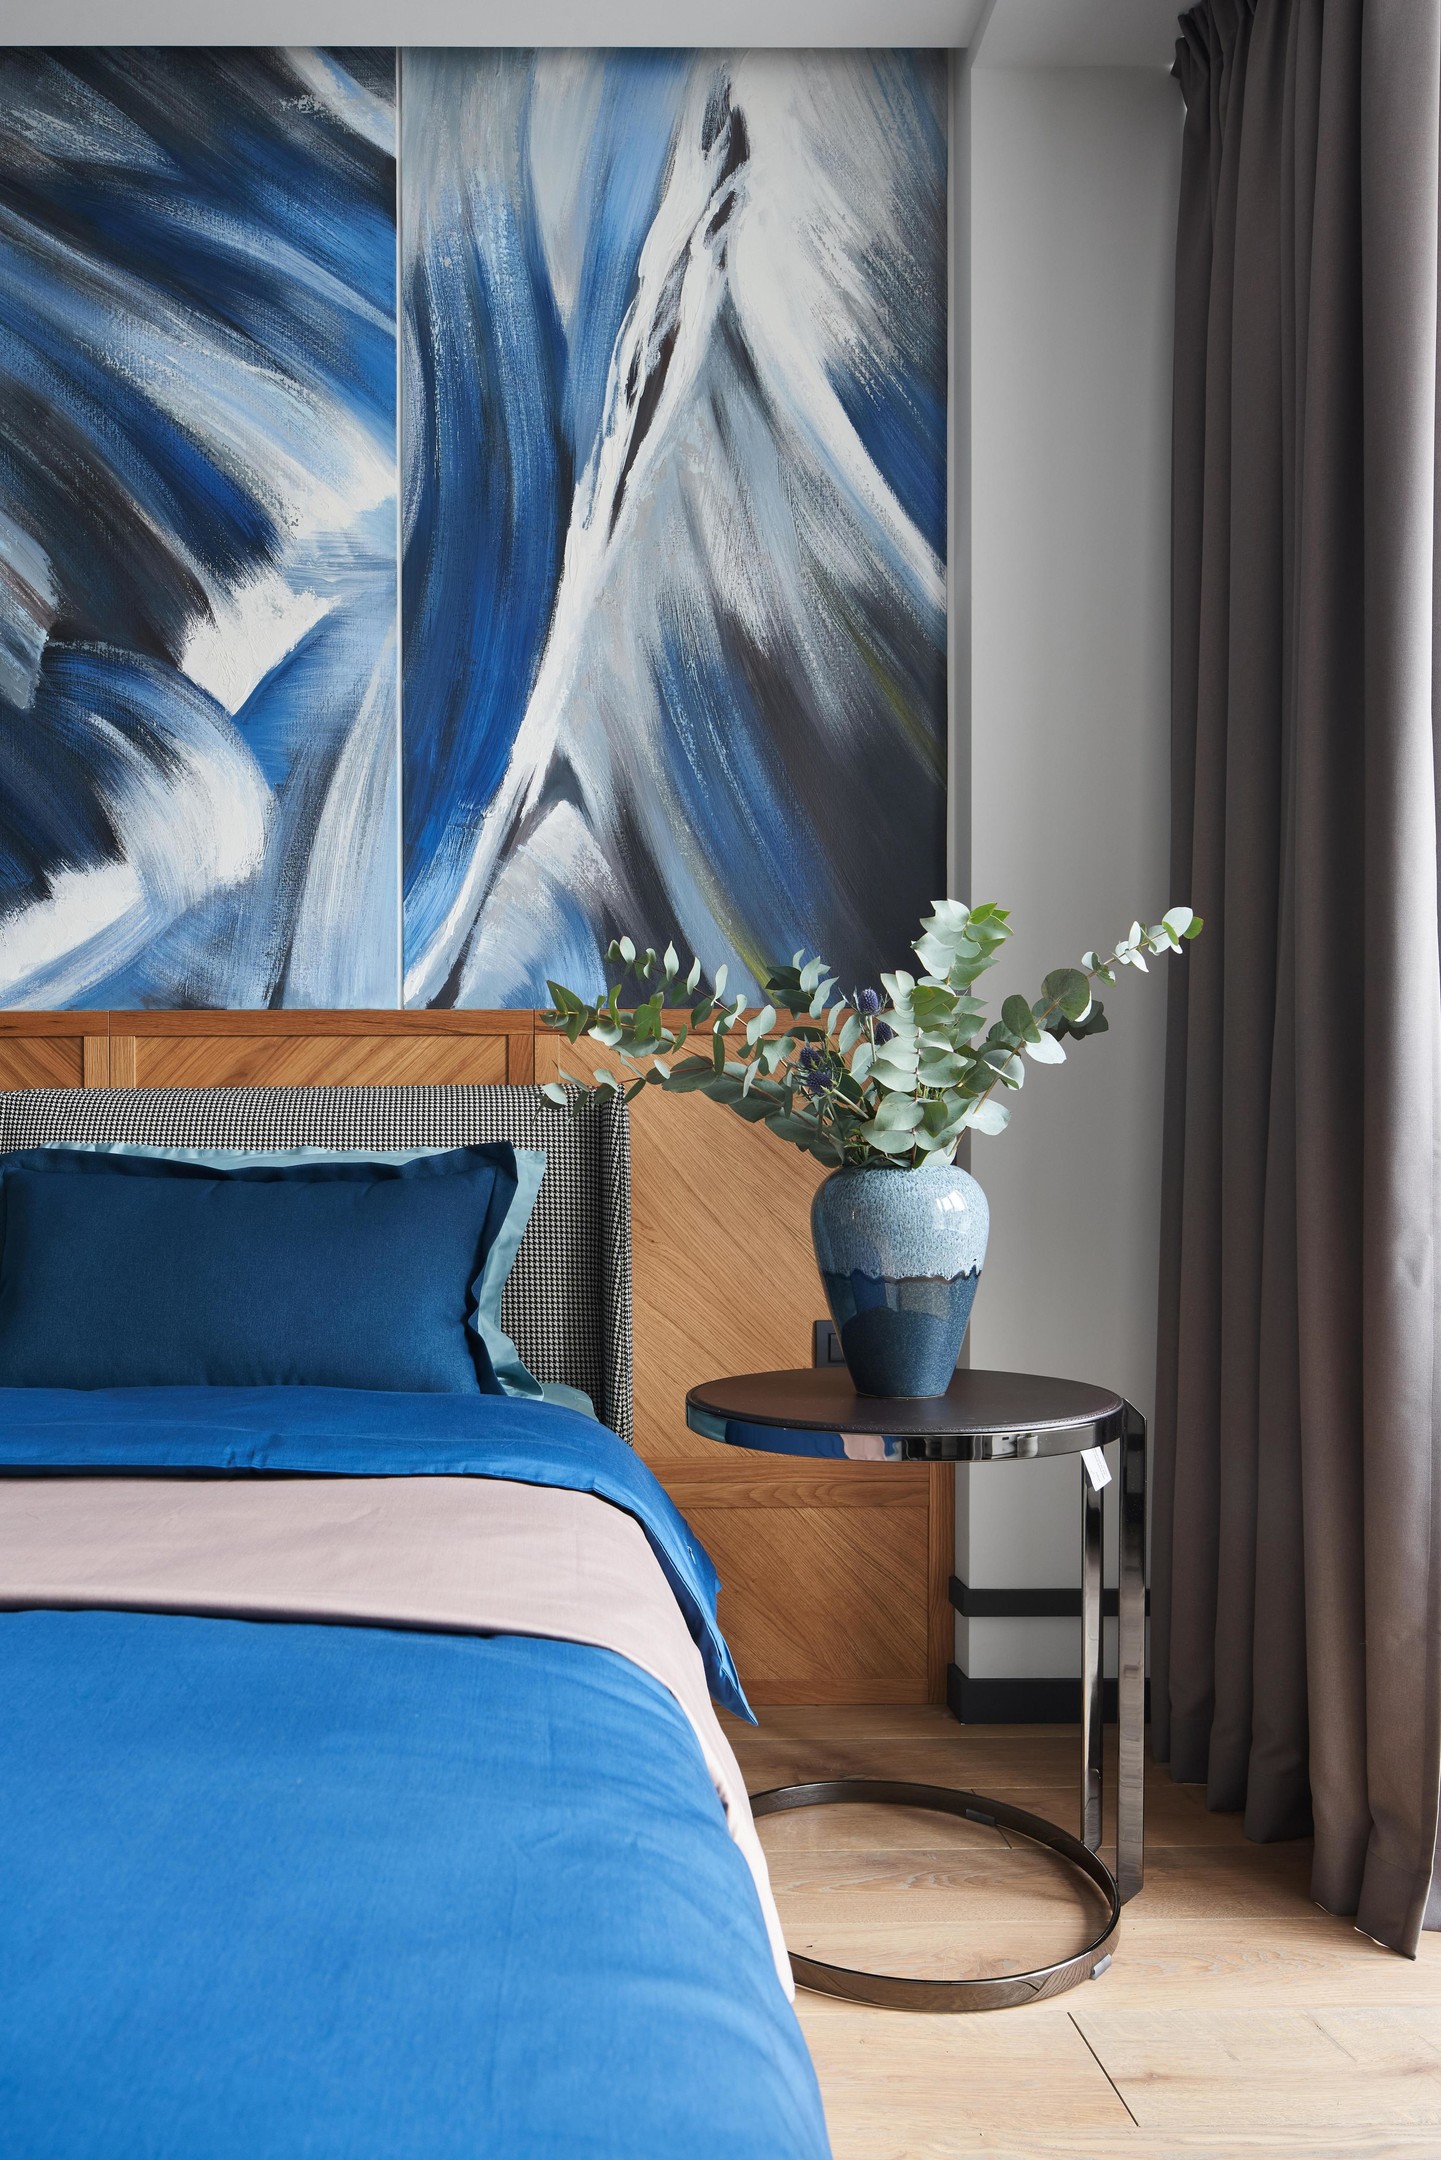 Khu vực đầu giường với tấm gỗ vững chãi làm điểm tựa đồng thời cũng tăng thêm sắc màu cho không gian. Táp đầu giường bằng kim loại sáng bóng, bên trên là lọ hoa bằng gốm sứ có gam màu xanh lam đậm - nhạt hài hòa và tinh tế.